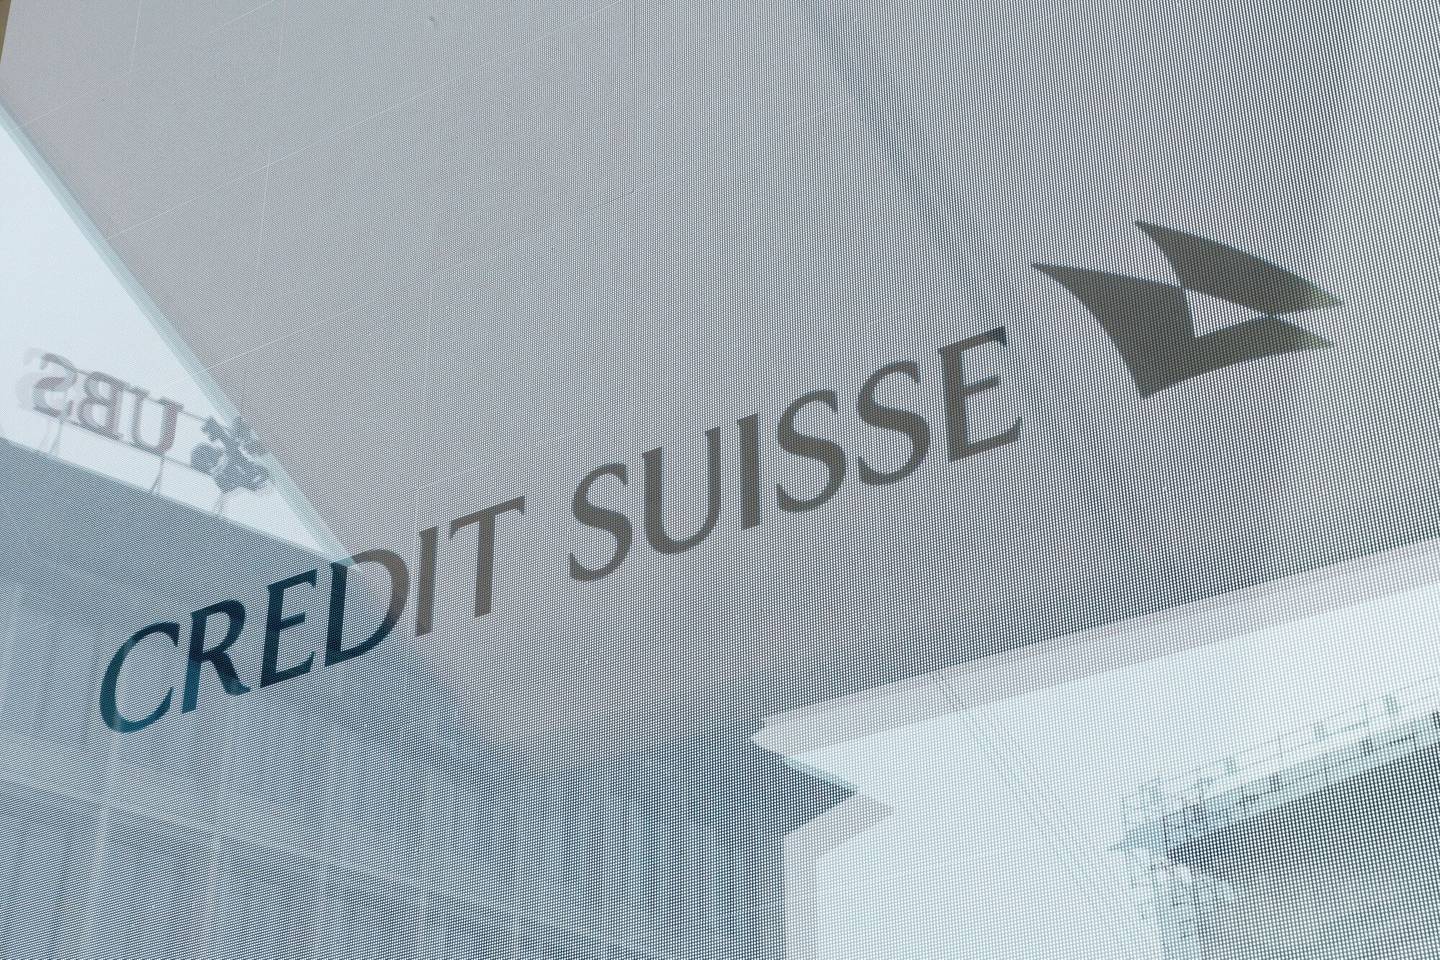 Los cambios se dan luego de que el competidor UBS Group AG acordara anteriormente este mes la compra de Credit Suisse